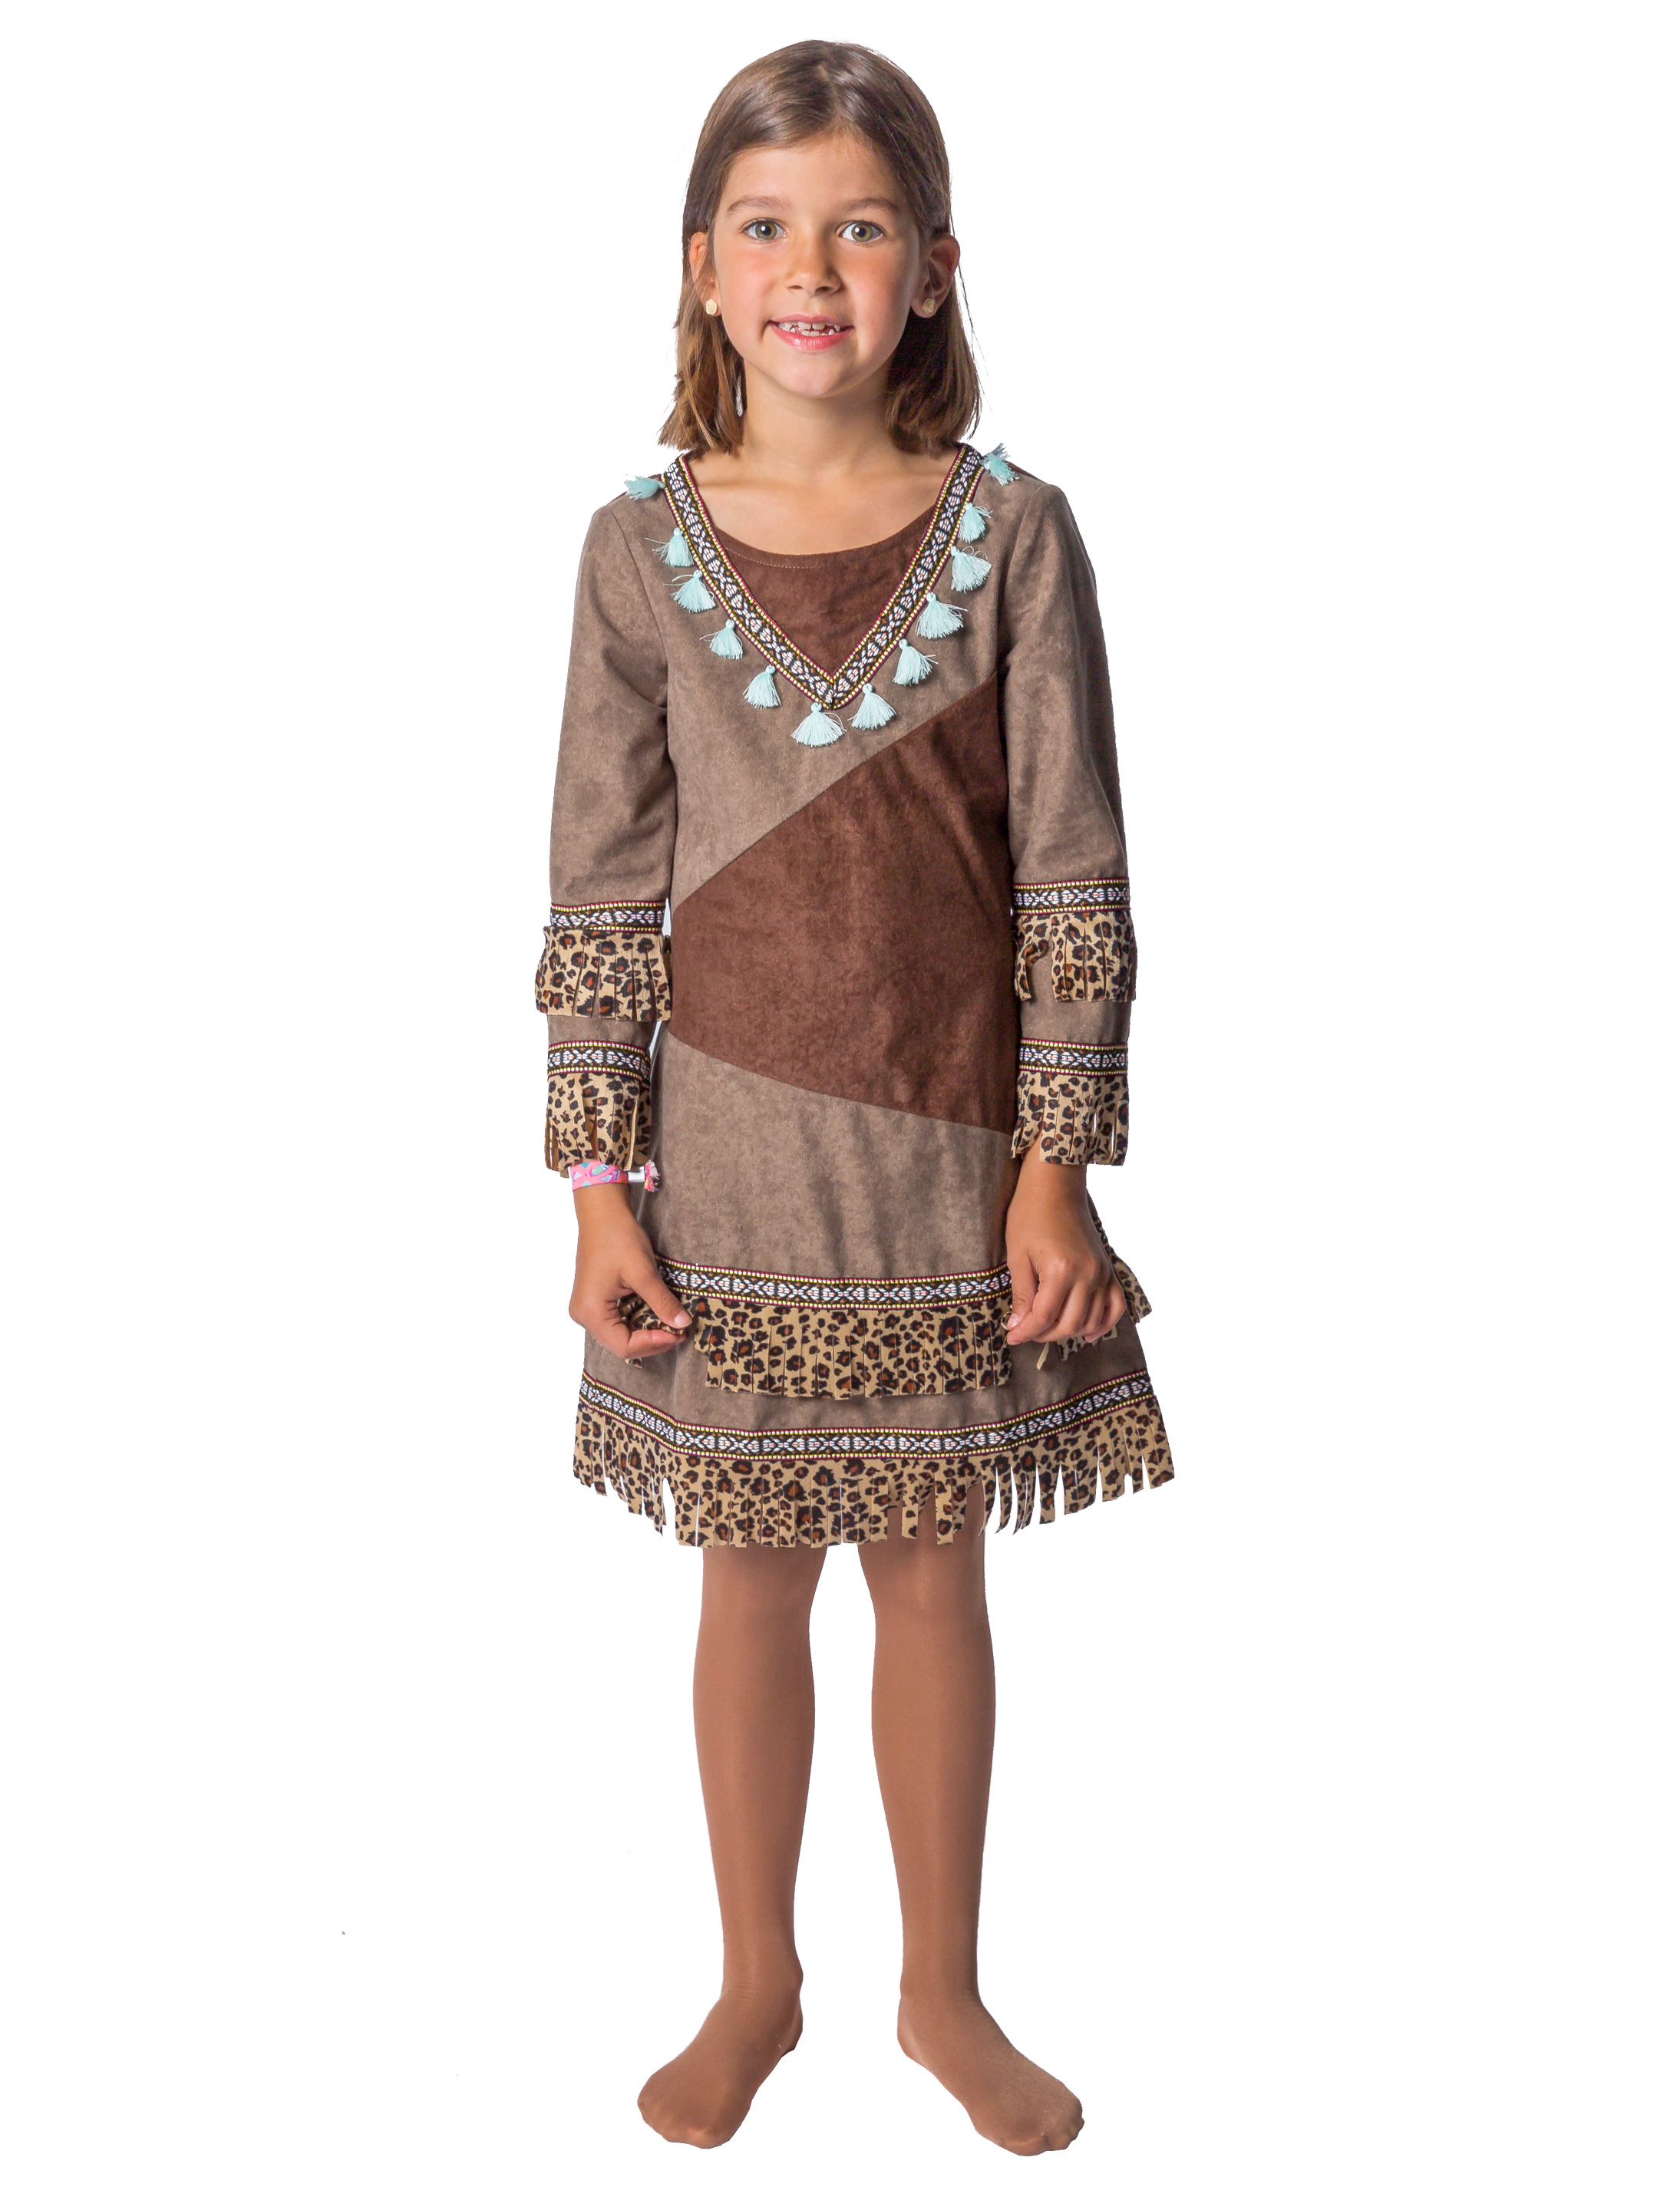 Kleid Indianerin Kinder Mädchen dunkelbraun 128